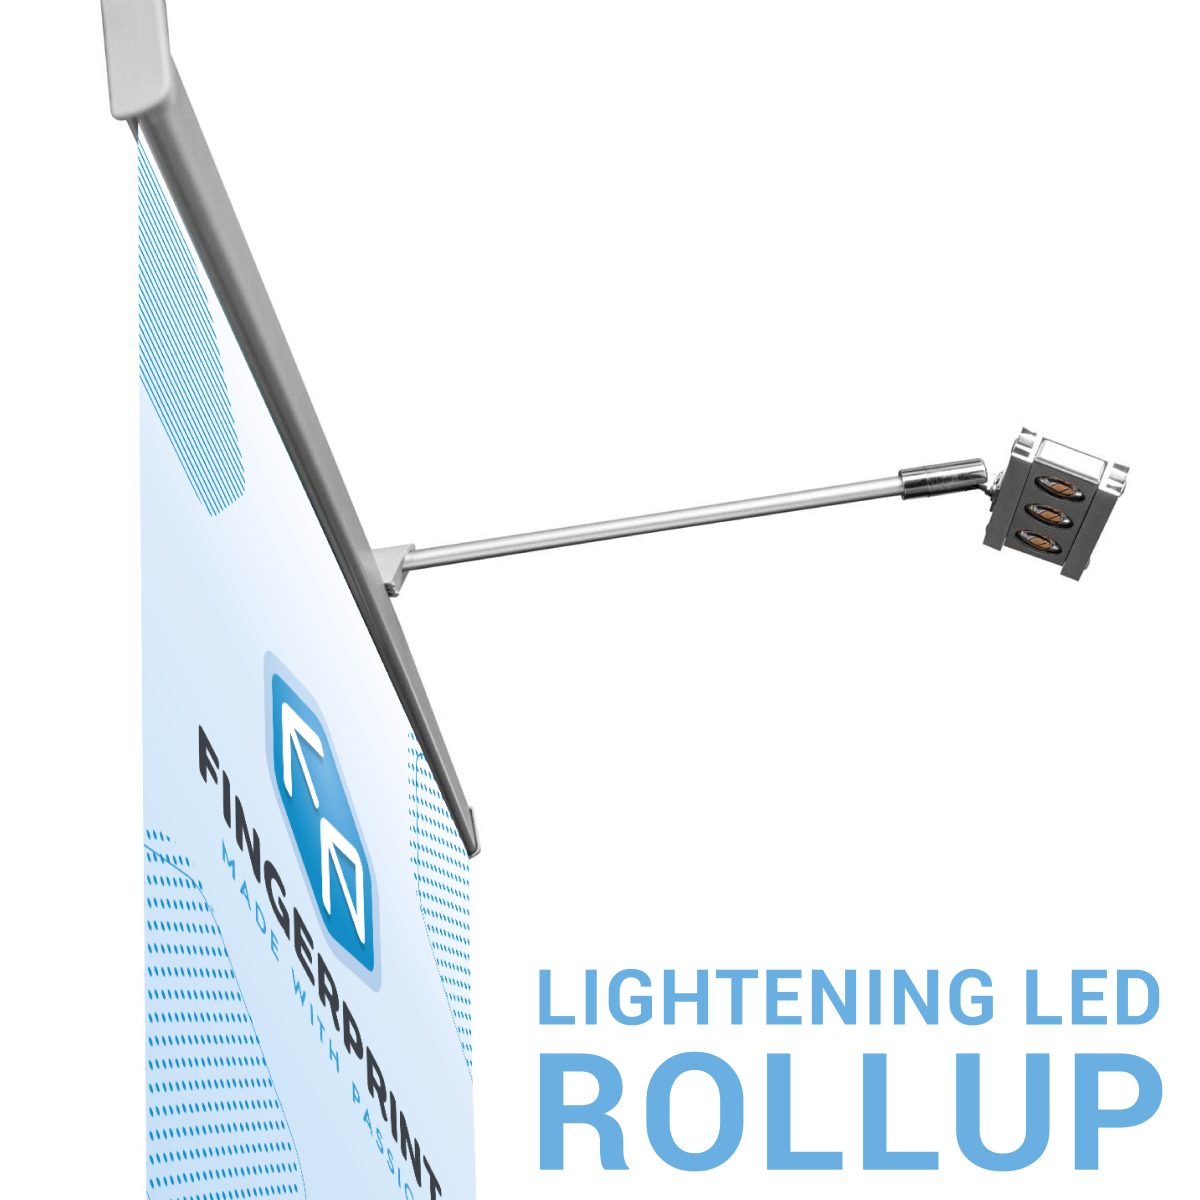 Roll Up reklaminio stendo LED šviestuvas